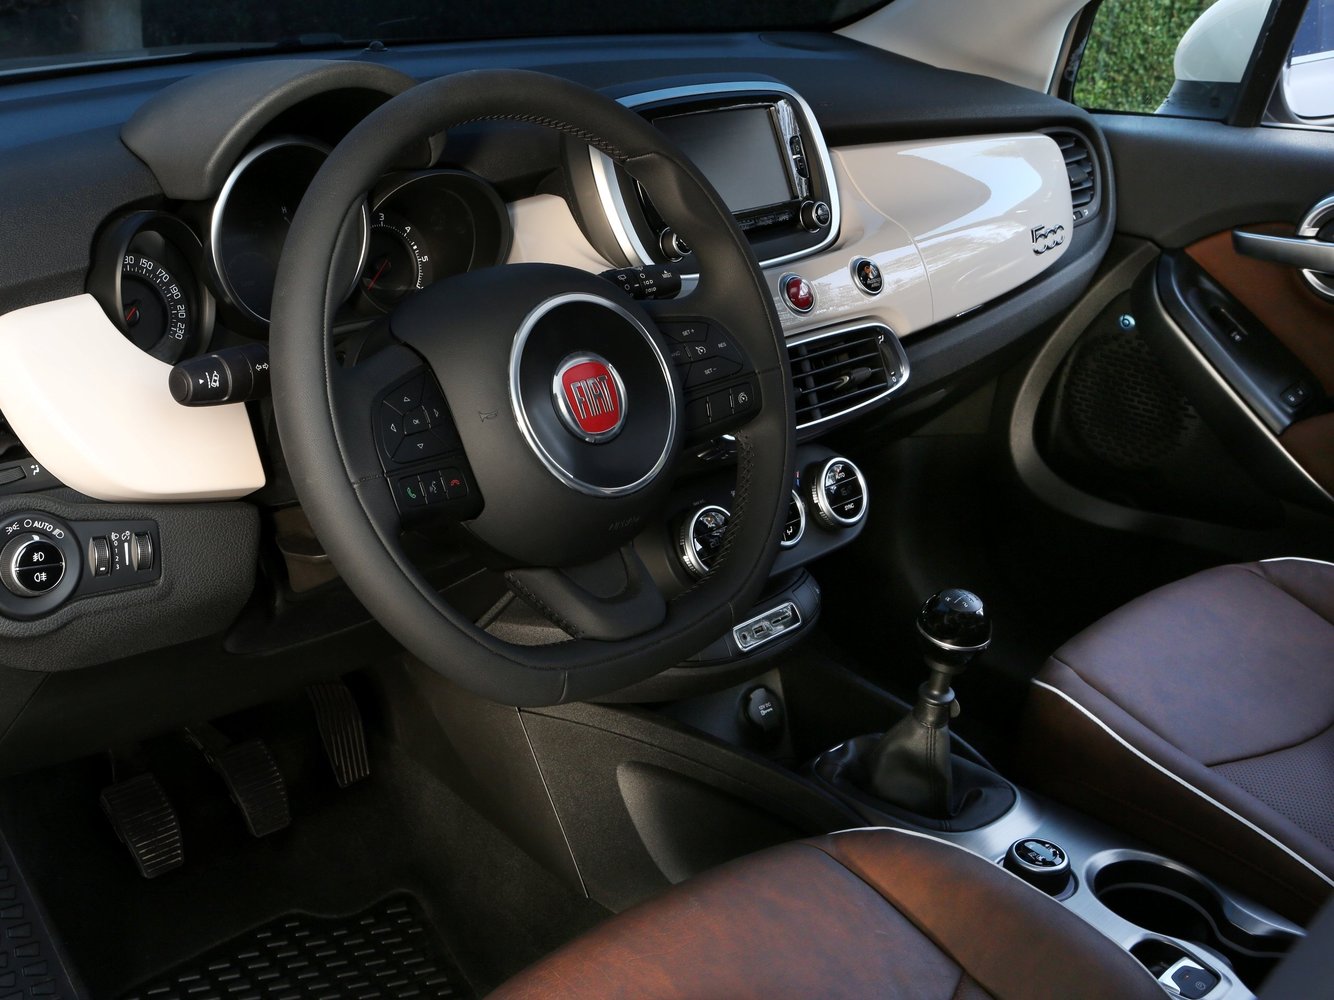 кроссовер Fiat 500X 2014 - 2016г выпуска модификация 2.4 AT (180 л.с.)